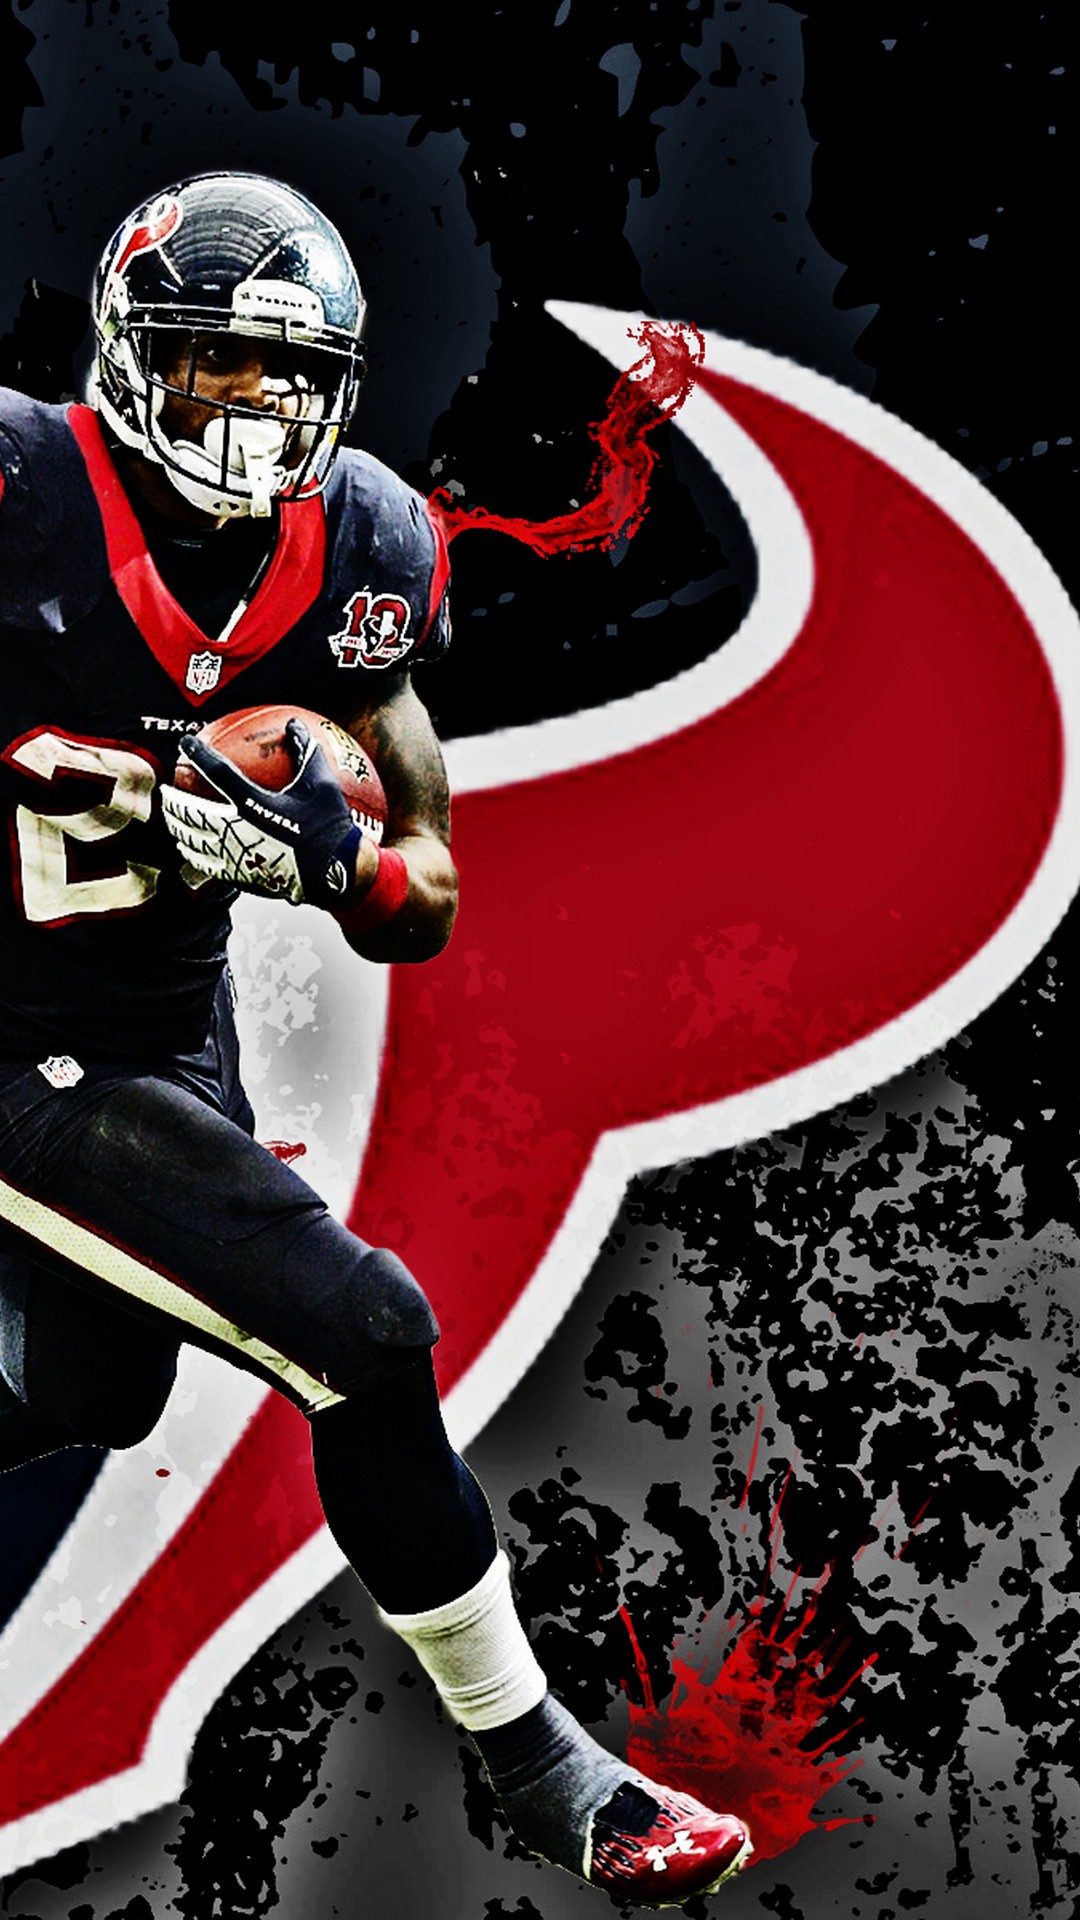 NFL Games iPhone Wallpaper Design - NFL Backgrounds